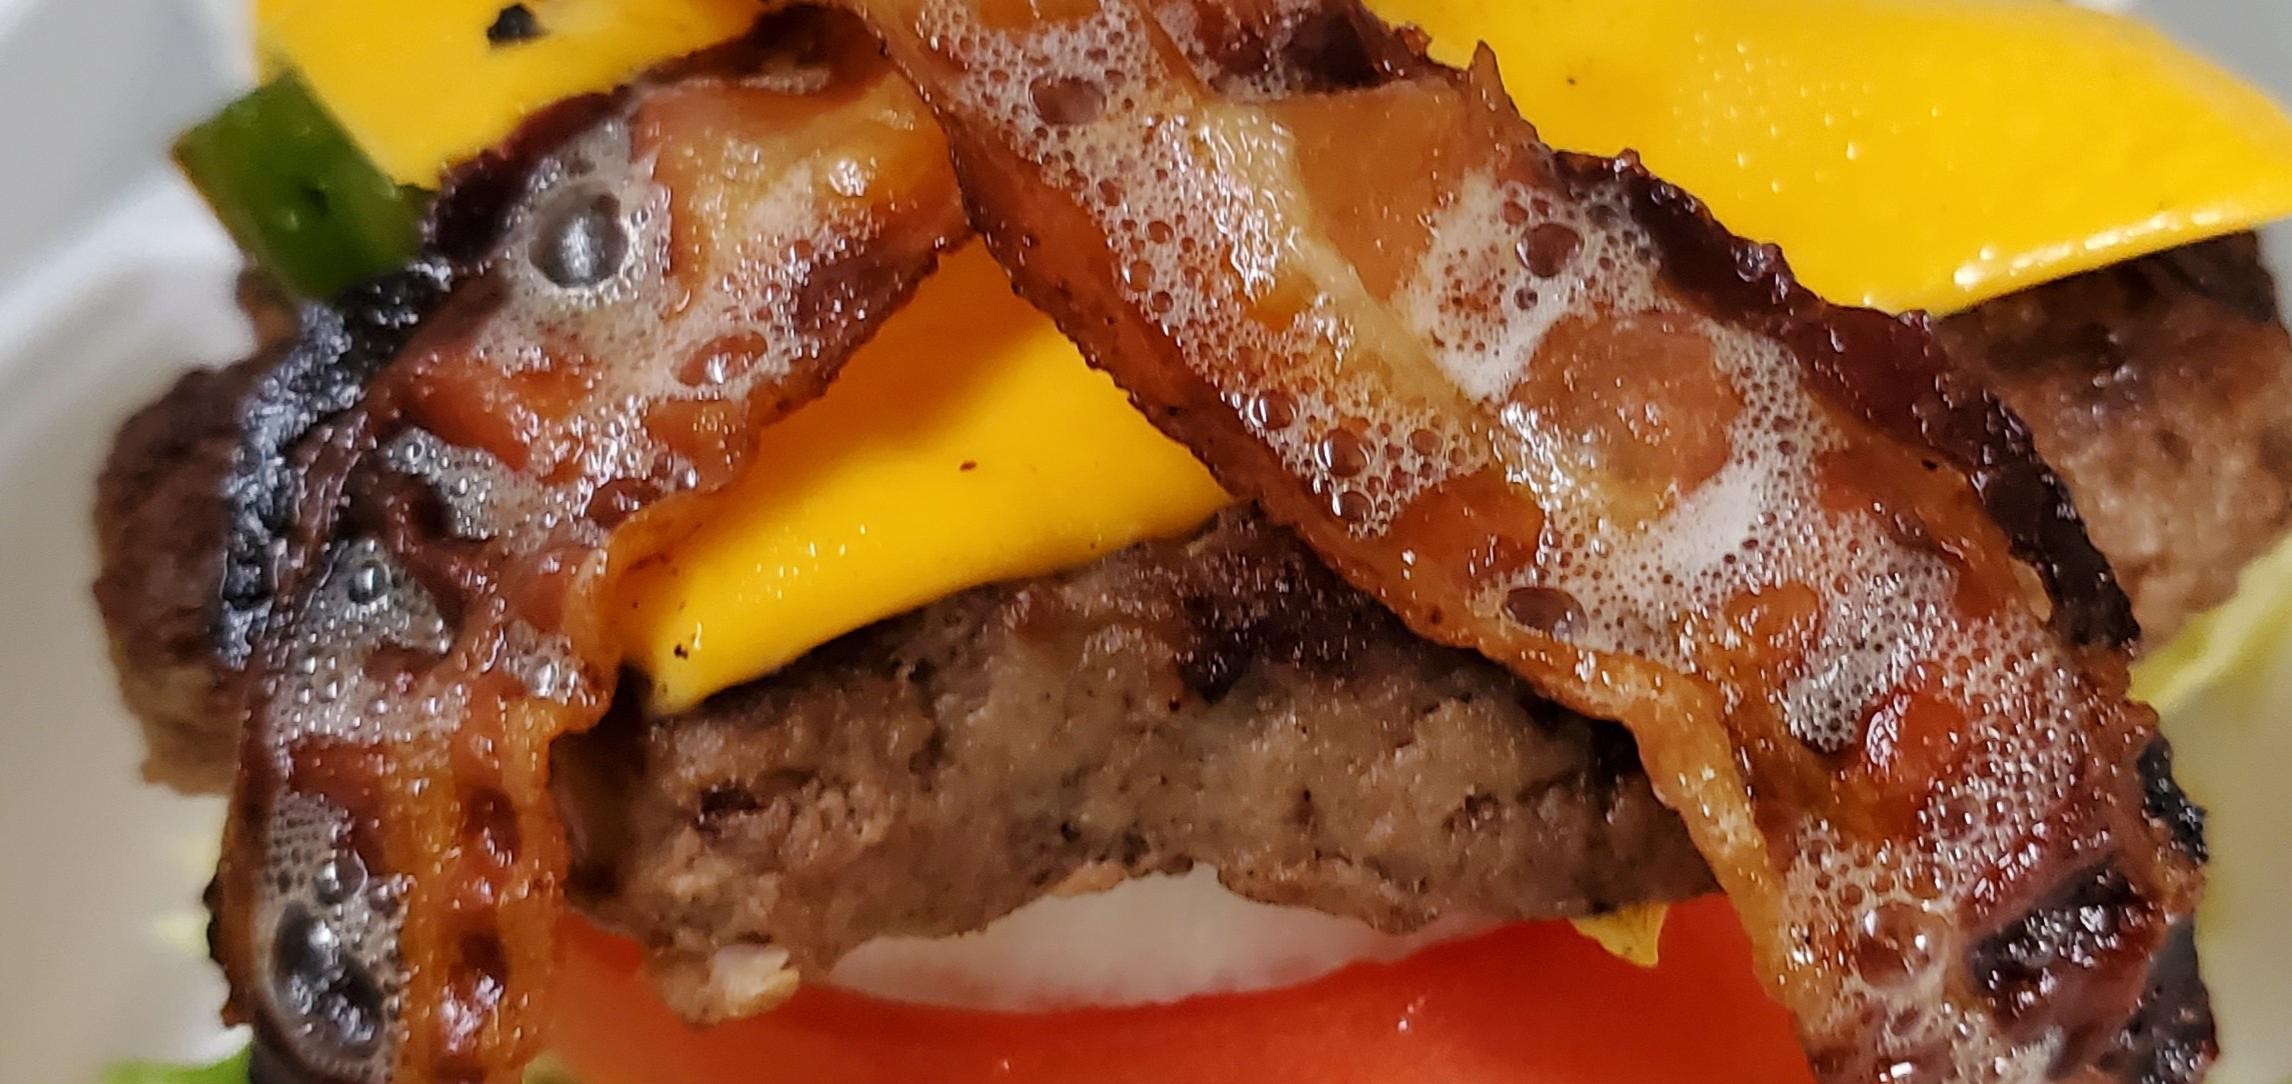 Bacon cheese burger